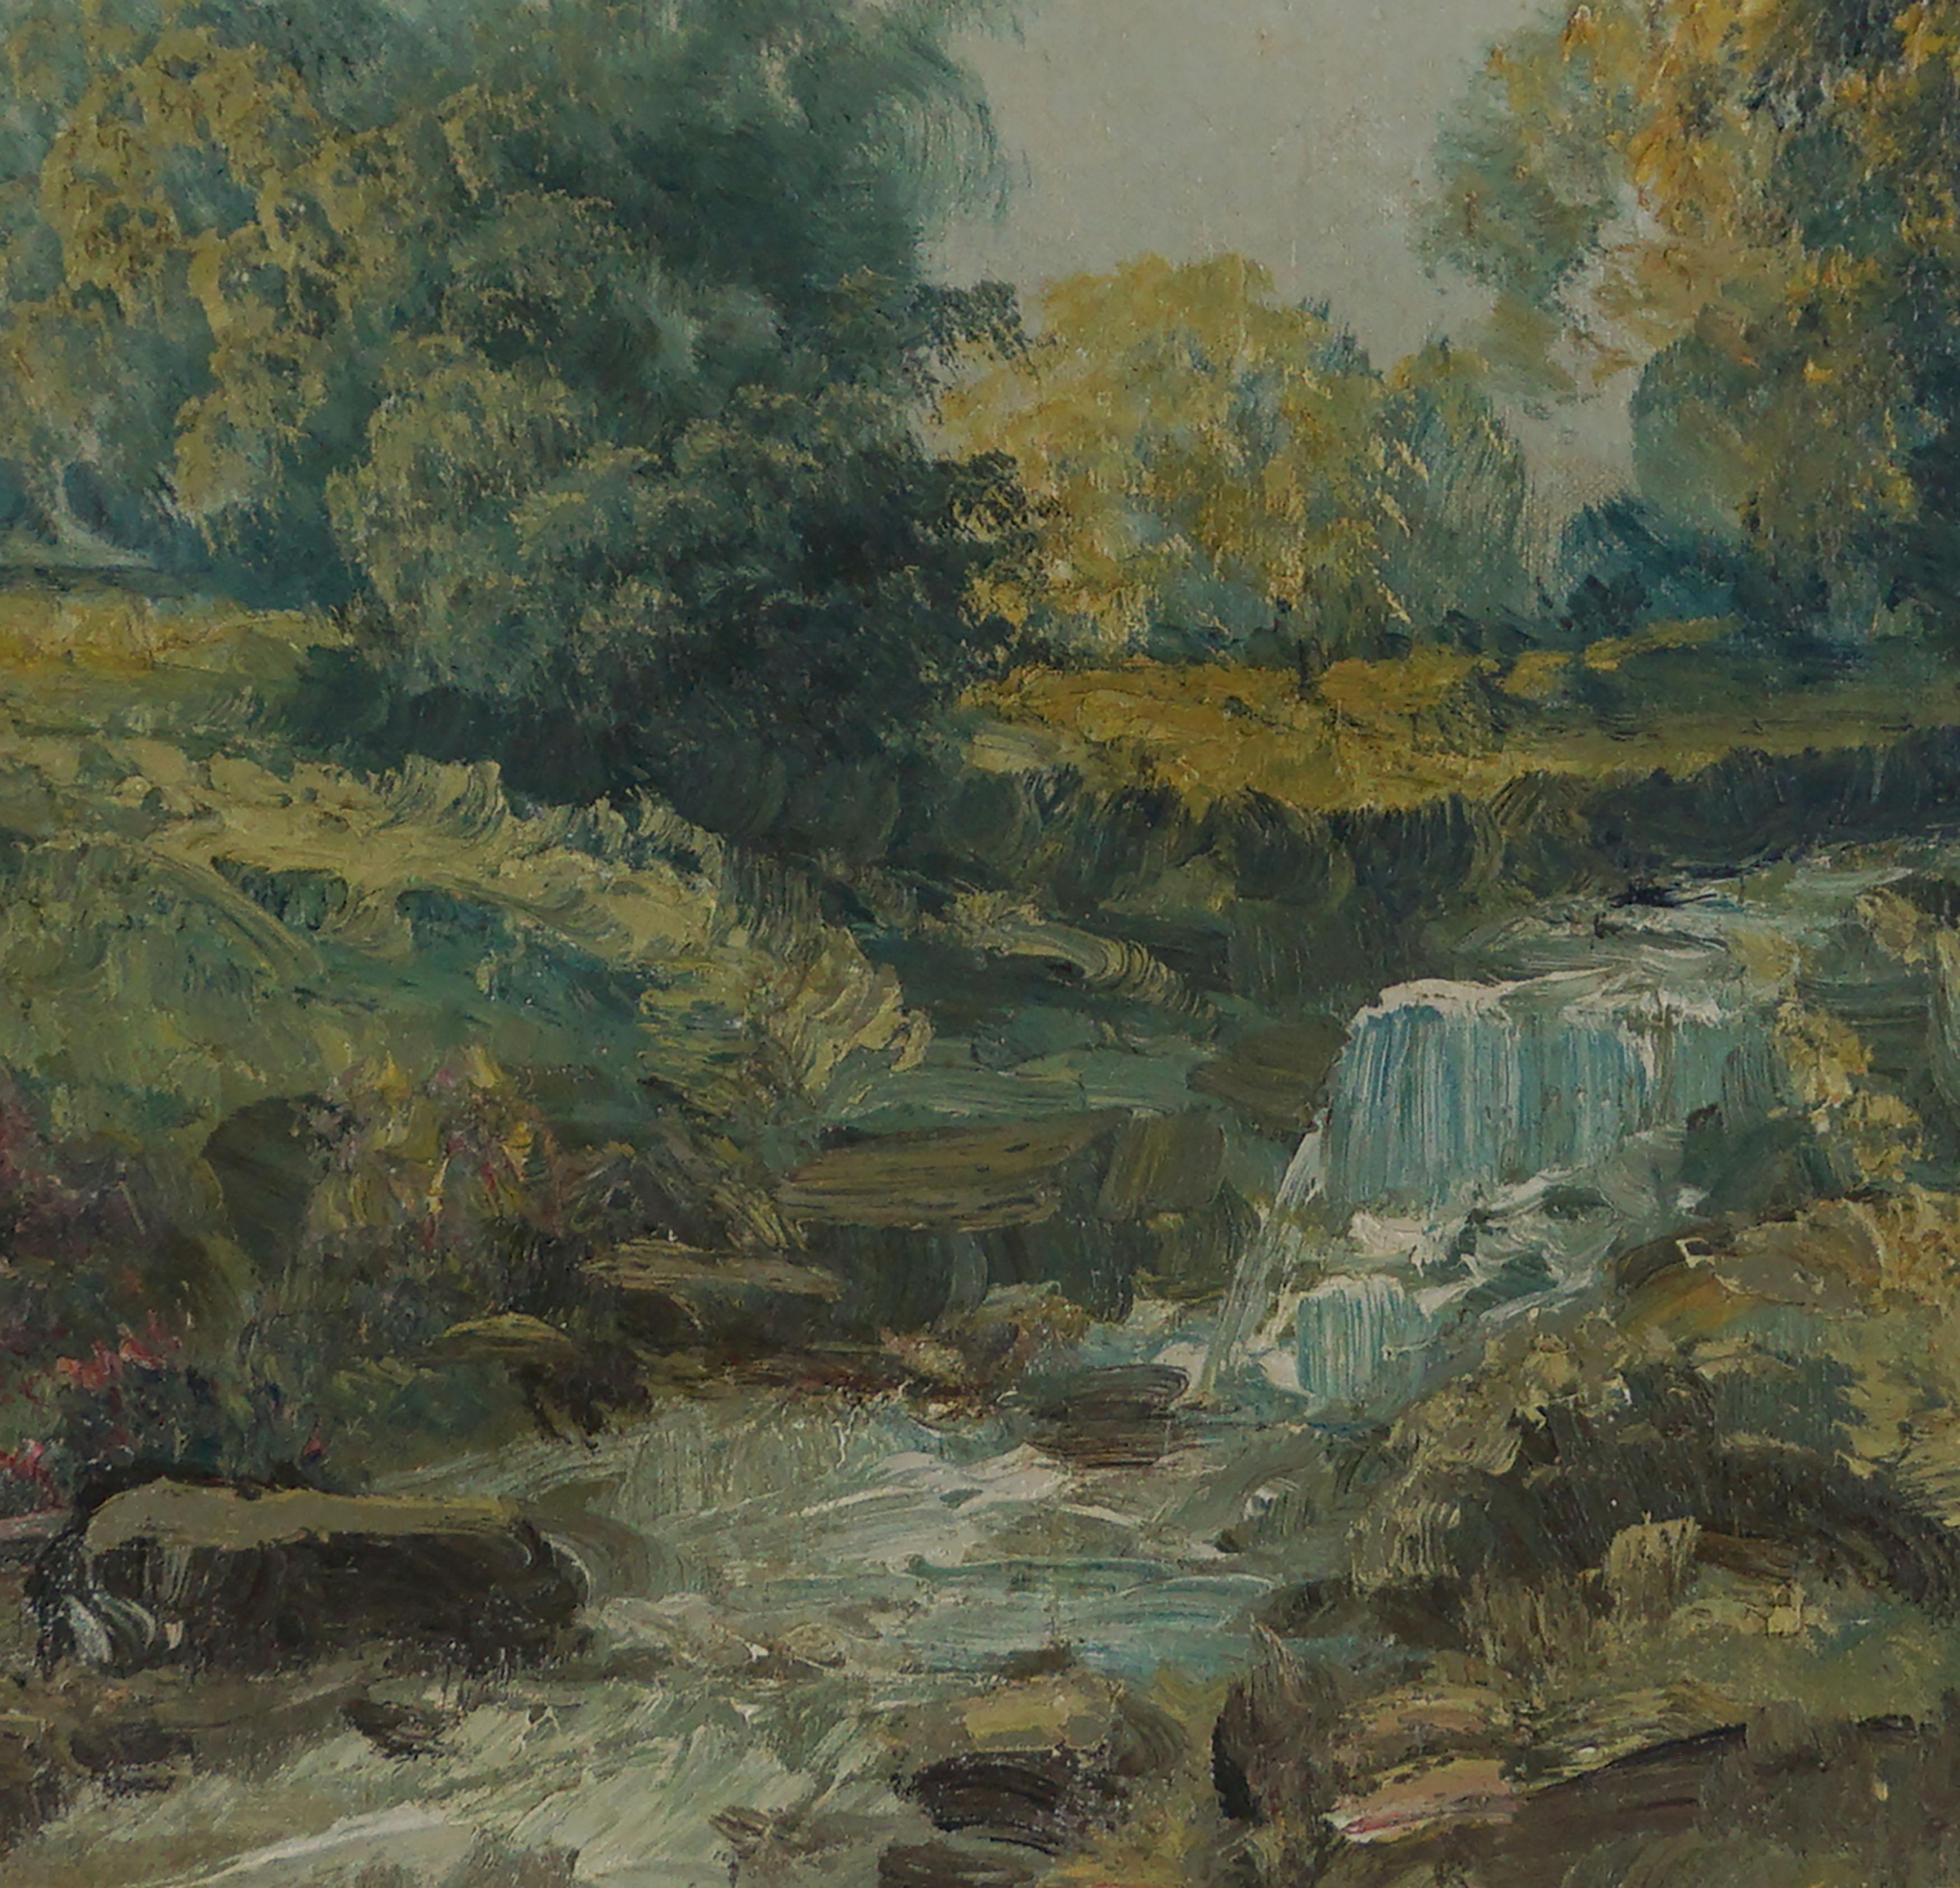 

Magnifique paysage impressionniste du lac Shongum, campagne du New Jersey au printemps avec ruisseau et fleurs par Rudolph J. Eicher (1884 - 1958), Circa 1940s. Le feuillage lumineux du printemps et le ruisseau qui coule forment un tableau